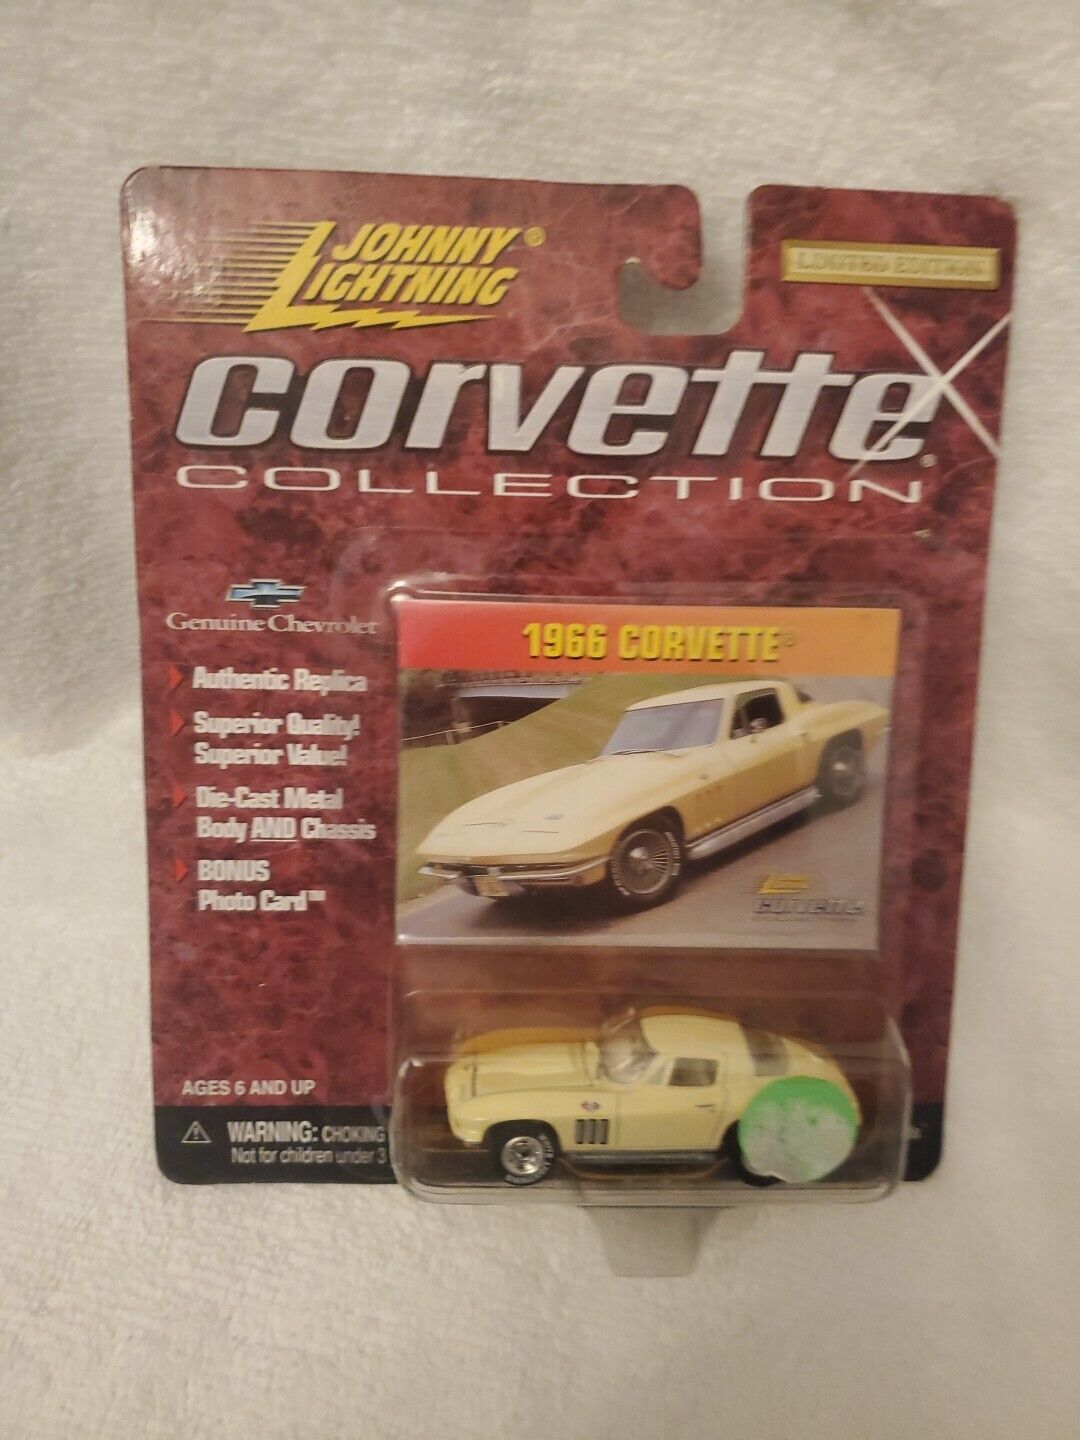 1966 Corvette Johnny Lightning Corvette Collection model toy car